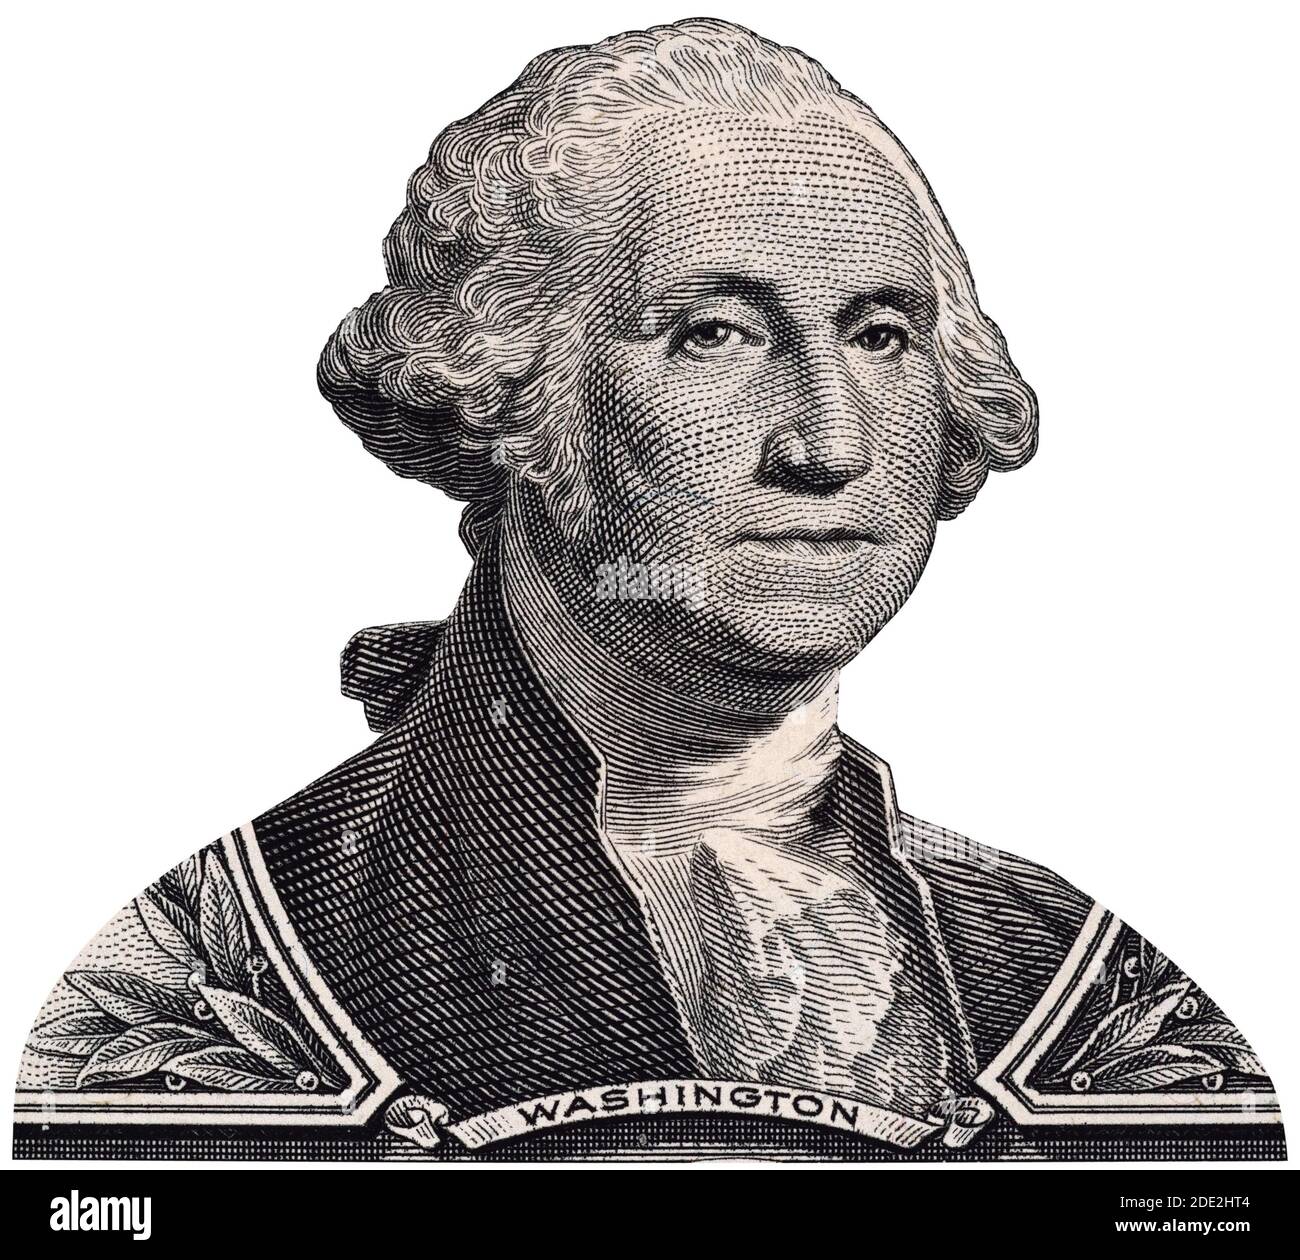 US-Präsident George Washington Porträt auf einem US-Dollar-Geldschein Makro isoliert, 1 usd, Vereinigte Staaten von Amerika Geld Nahaufnahme Stockfoto